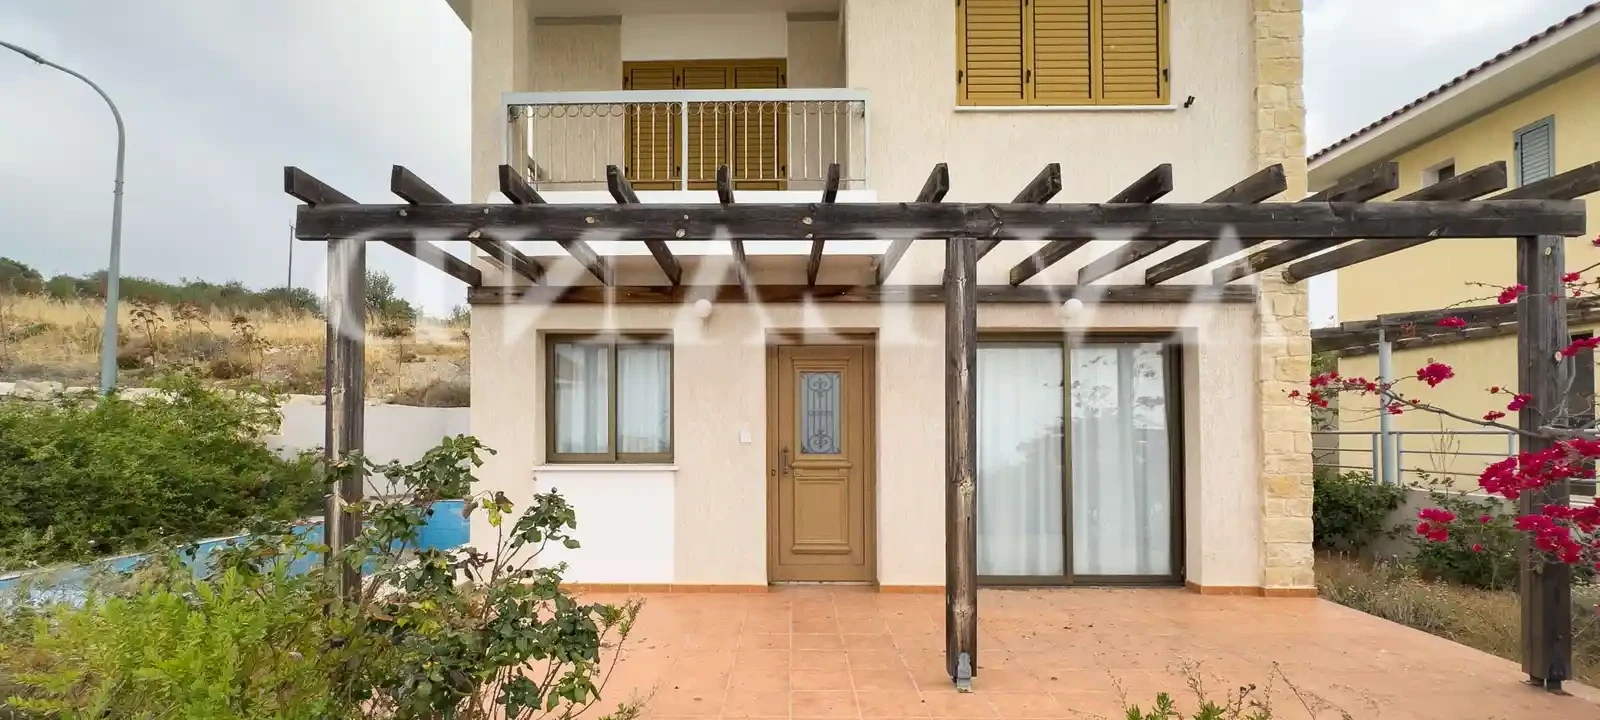 2-bedroom villa to rent €1.200, image 1